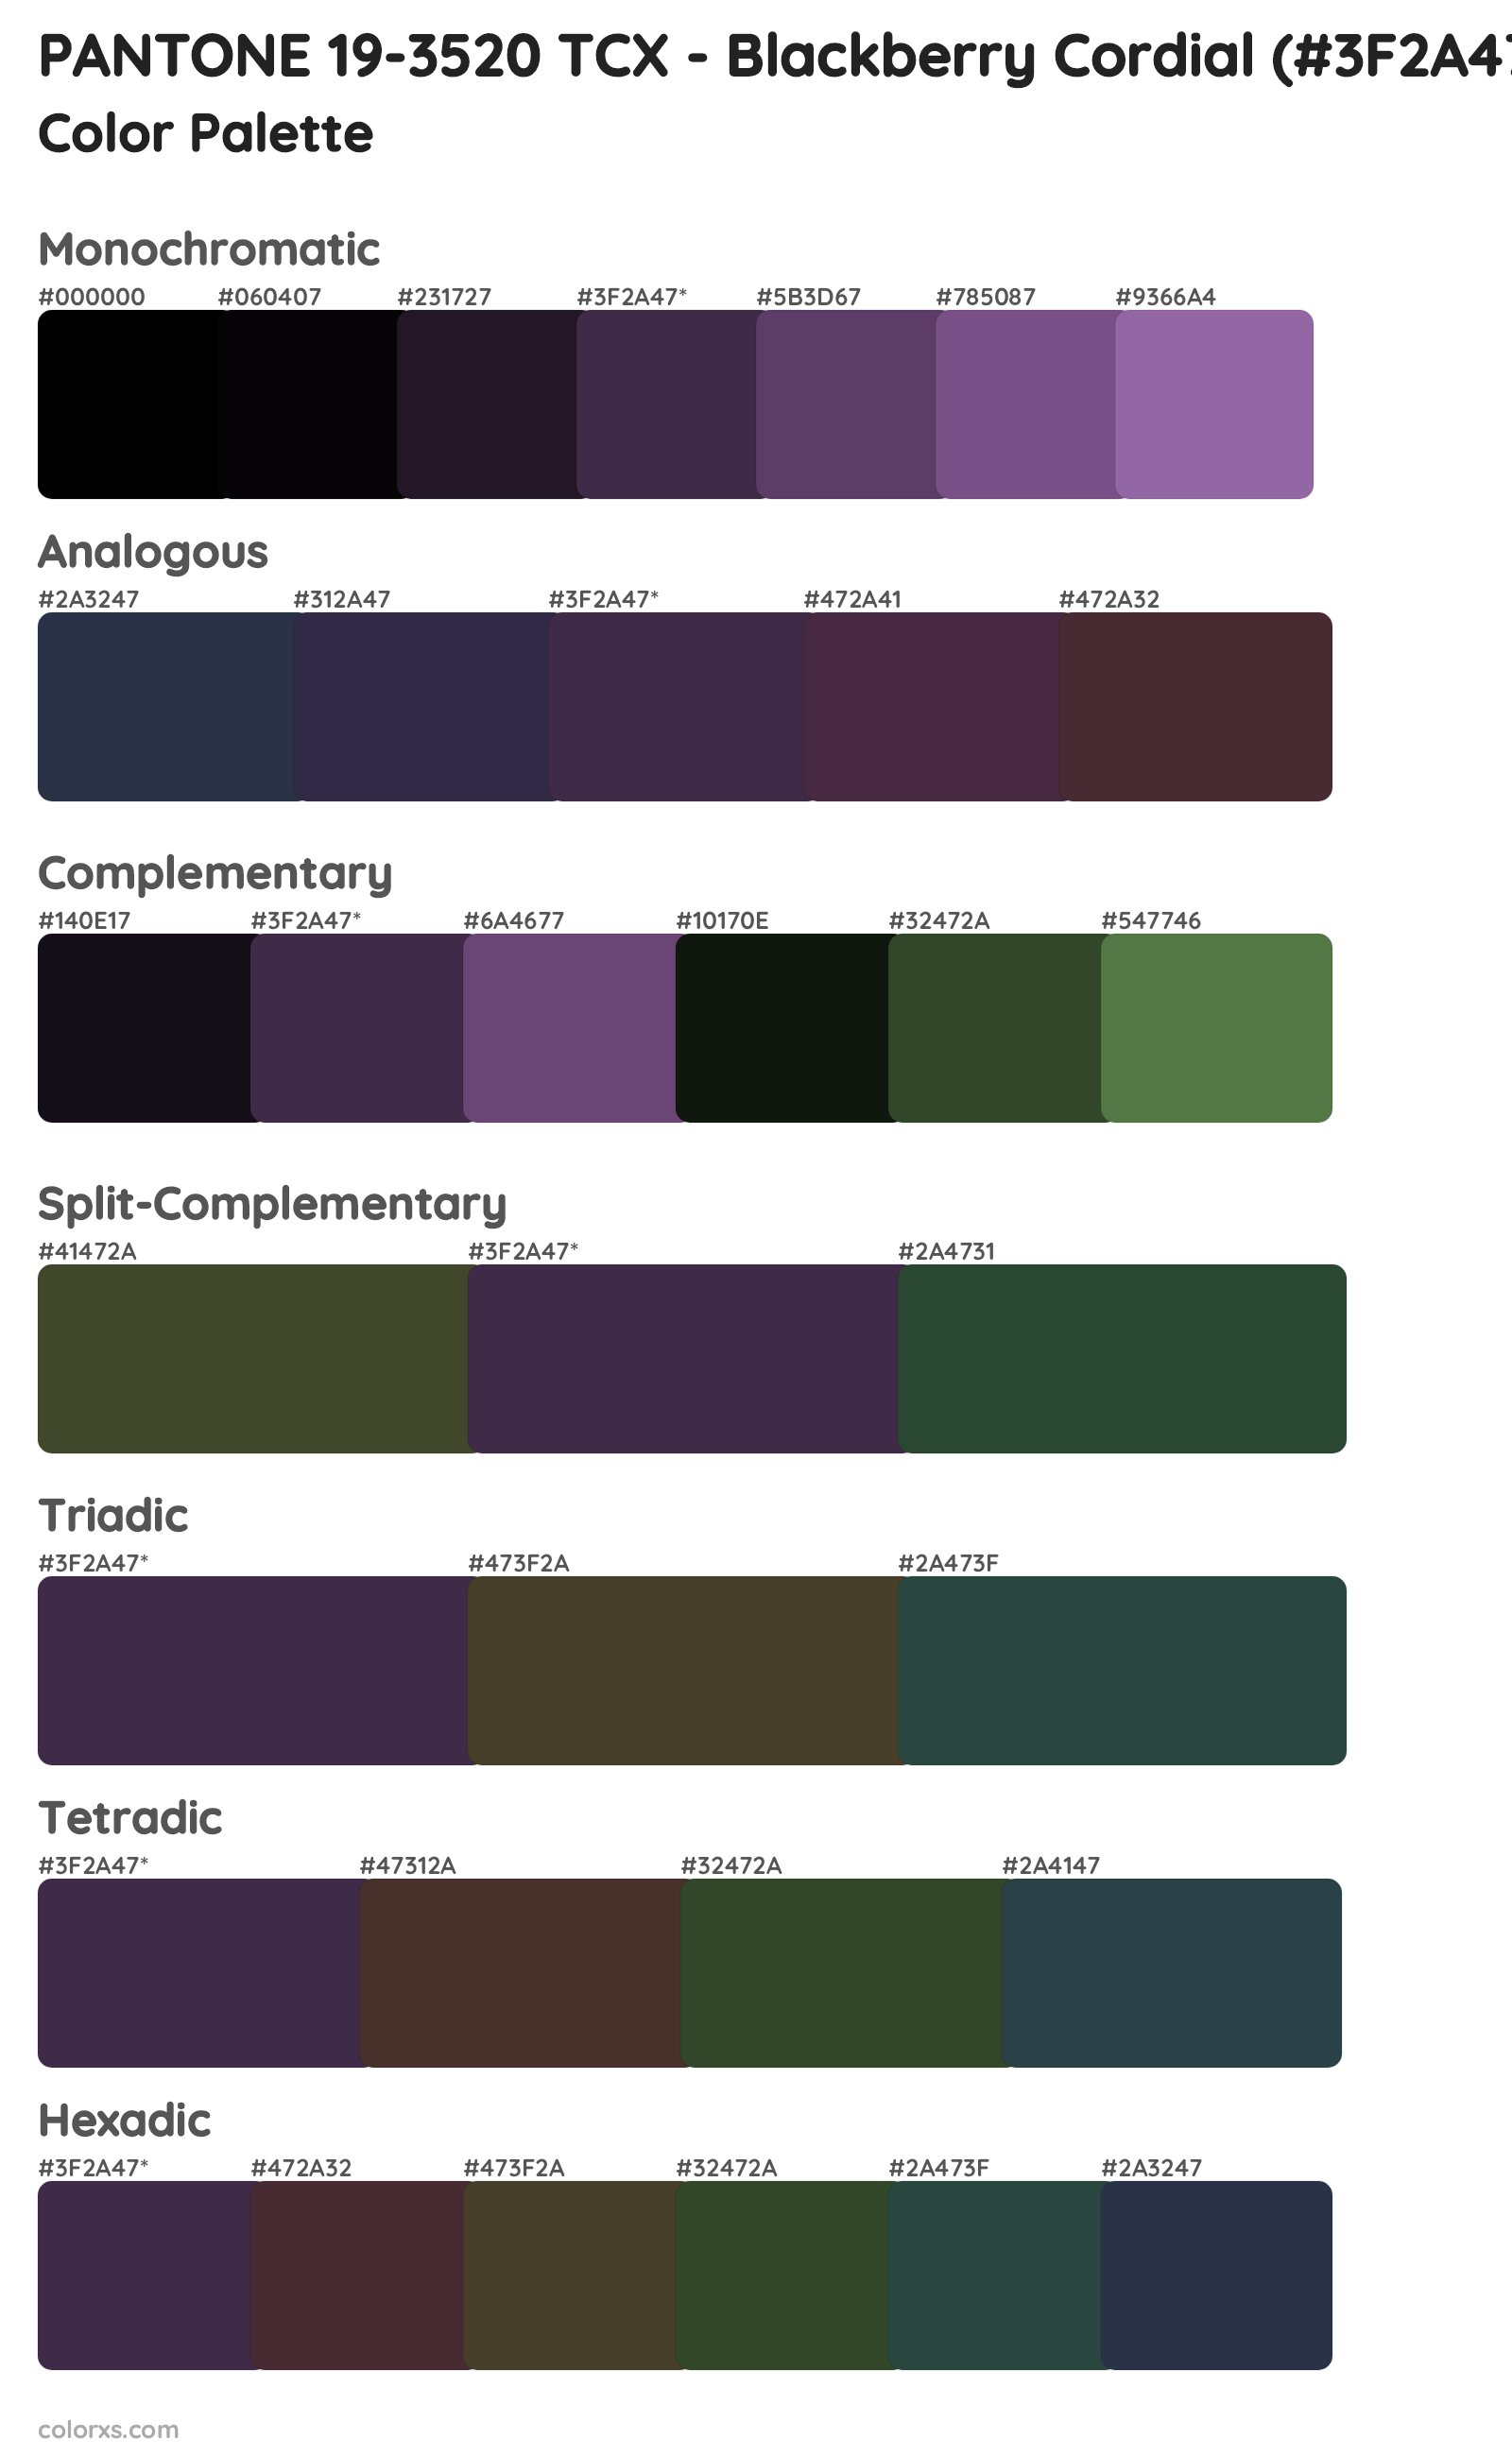 PANTONE 19-3520 TCX - Blackberry Cordial Color Scheme Palettes